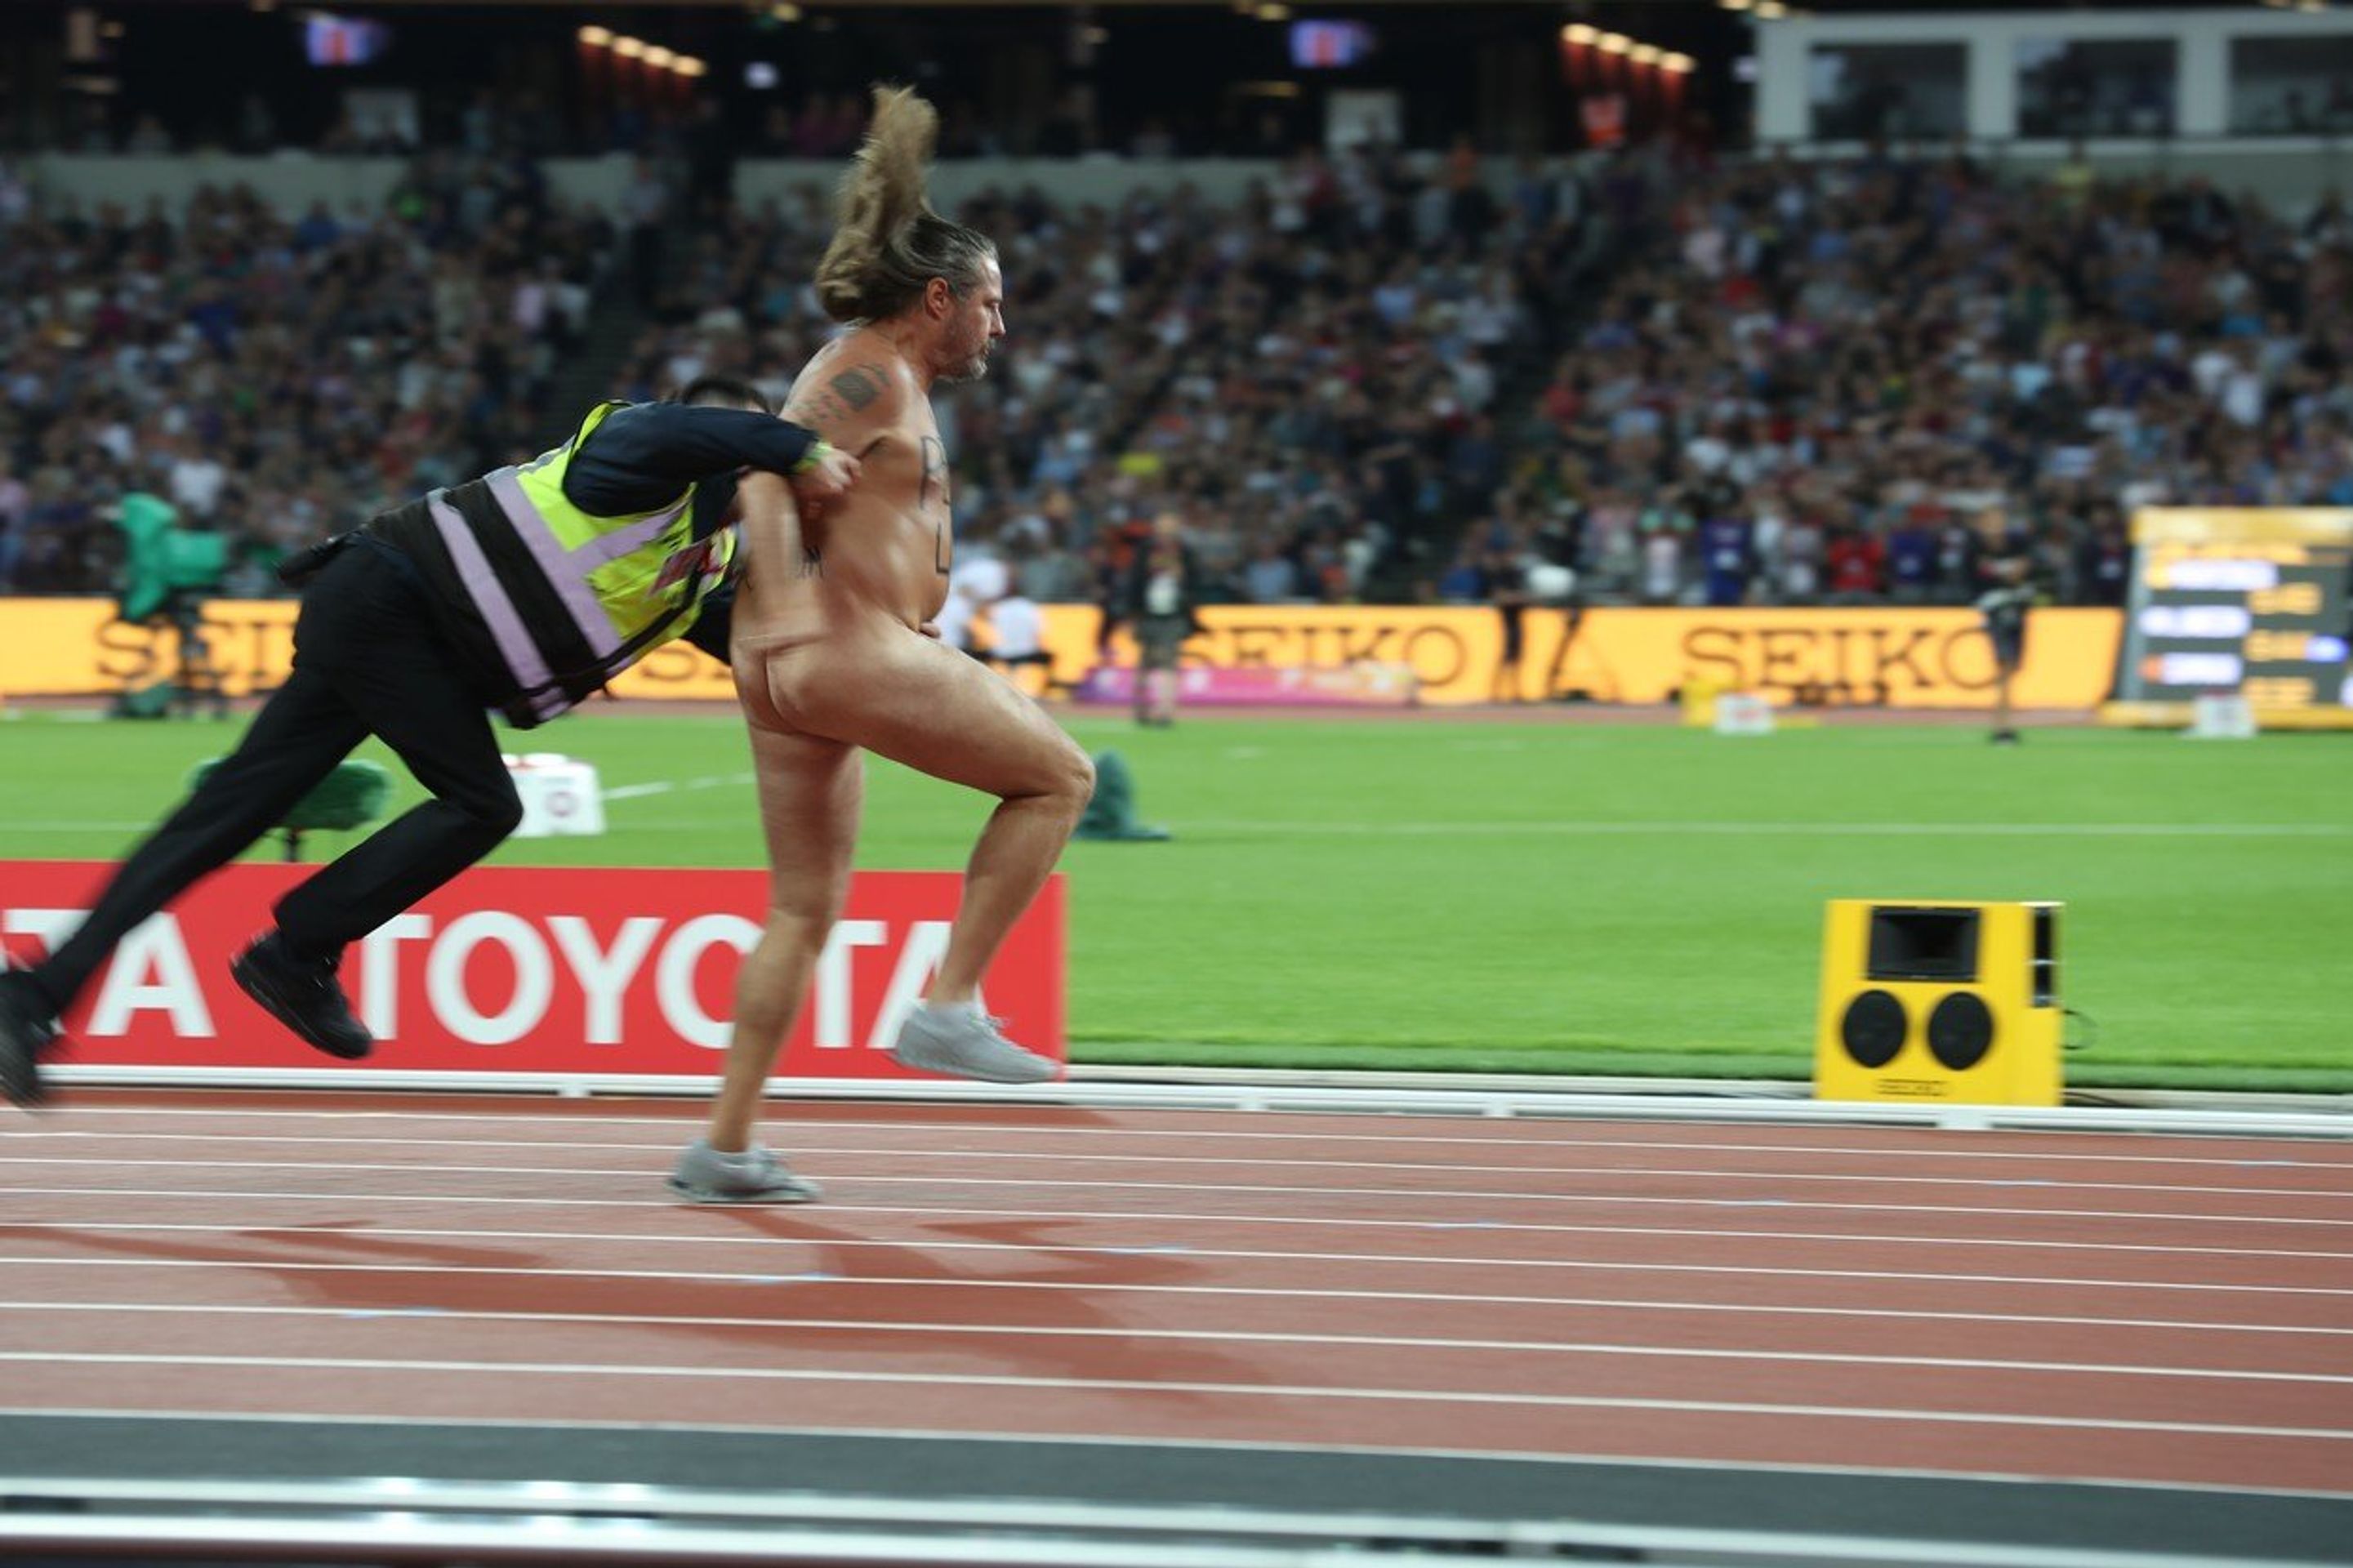 Nahý fanoušek sváděl sprinterský souboj s ochrankou - GALERIE: Bolt se loučil s kariérou, s ním se zase loučil odvážný naháč! (3/6)